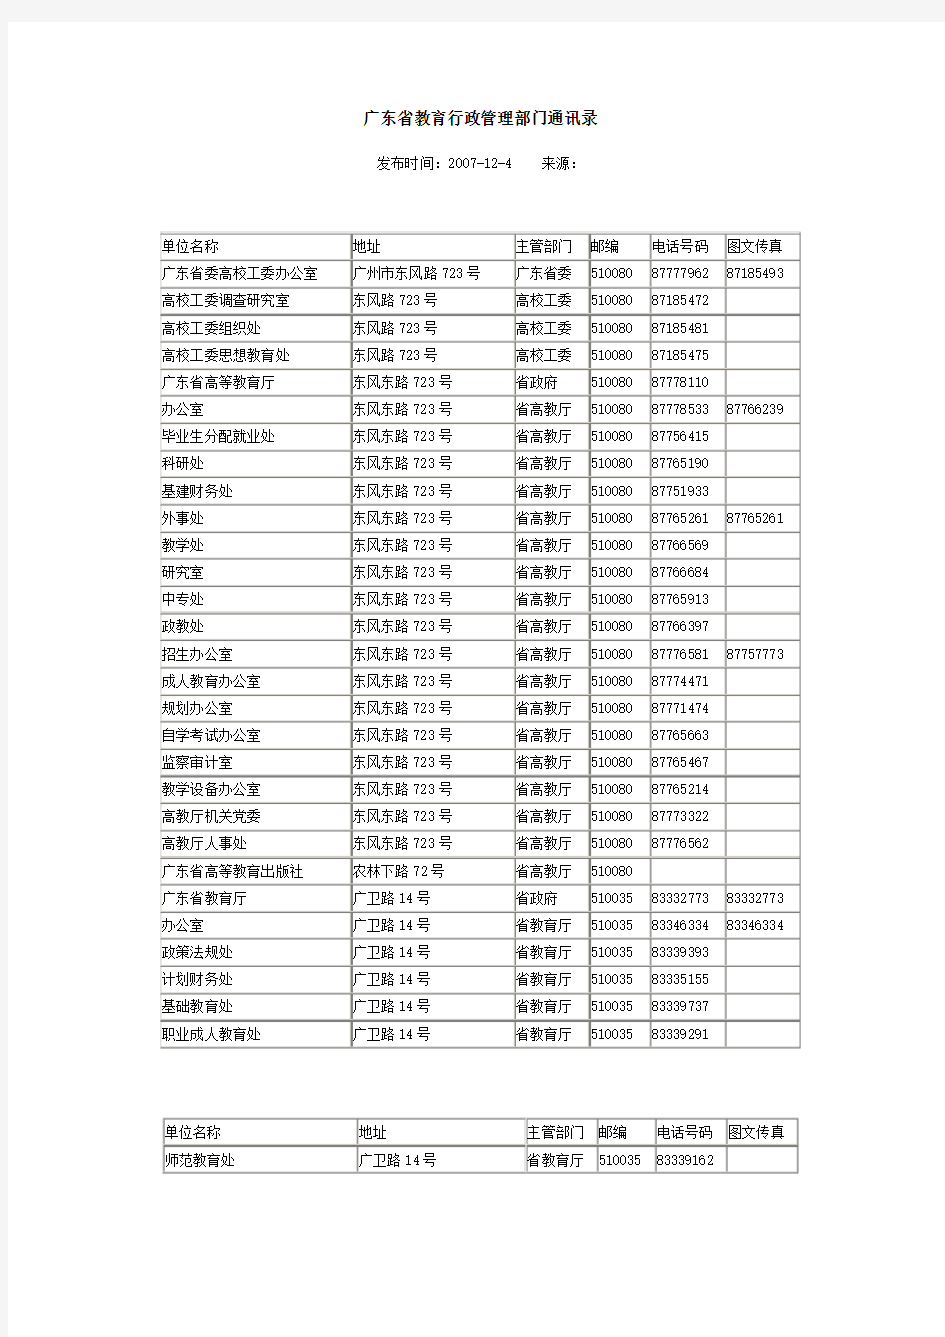 广东省教育行政管理部门通讯录